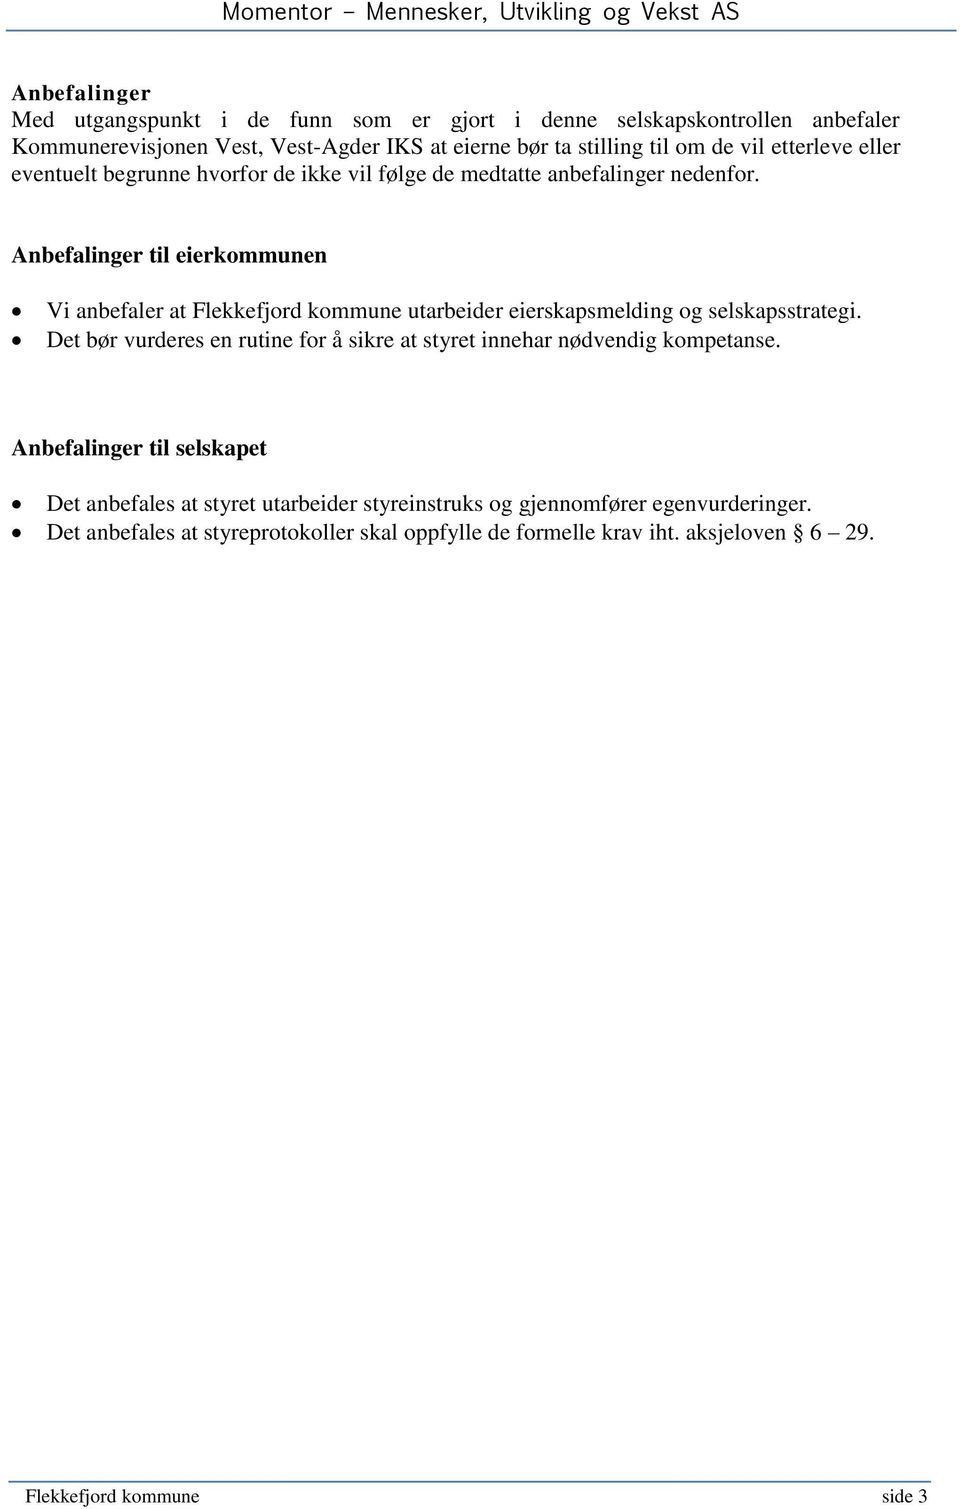 Anbefalinger til eierkommunen Vi anbefaler at Flekkefjord kommune utarbeider eierskapsmelding og selskapsstrategi.